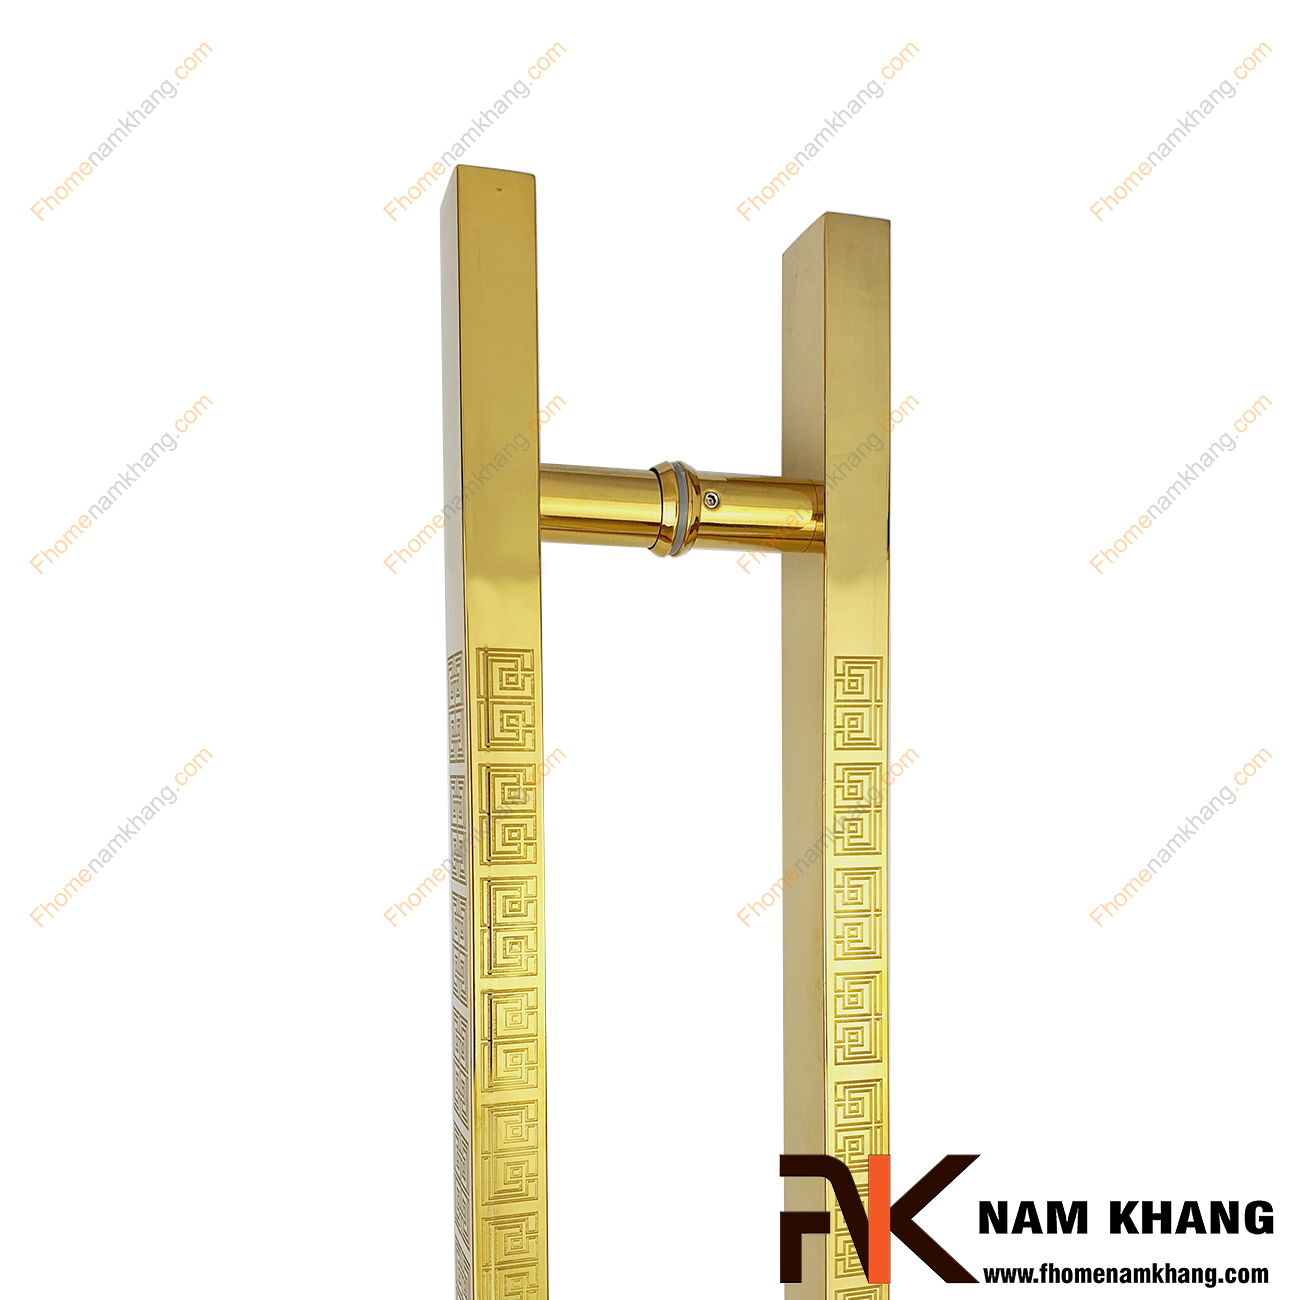 Tay nắm cửa chính màu vàng bóng dạng thanh vuông chữ vạn NK901L-V201 là dạng tay nắm lớn chuyên dùng cho cửa 2 hoặc 4 cánh, cửa gỗ cao cấp, cửa kính, cửa nhôm,...